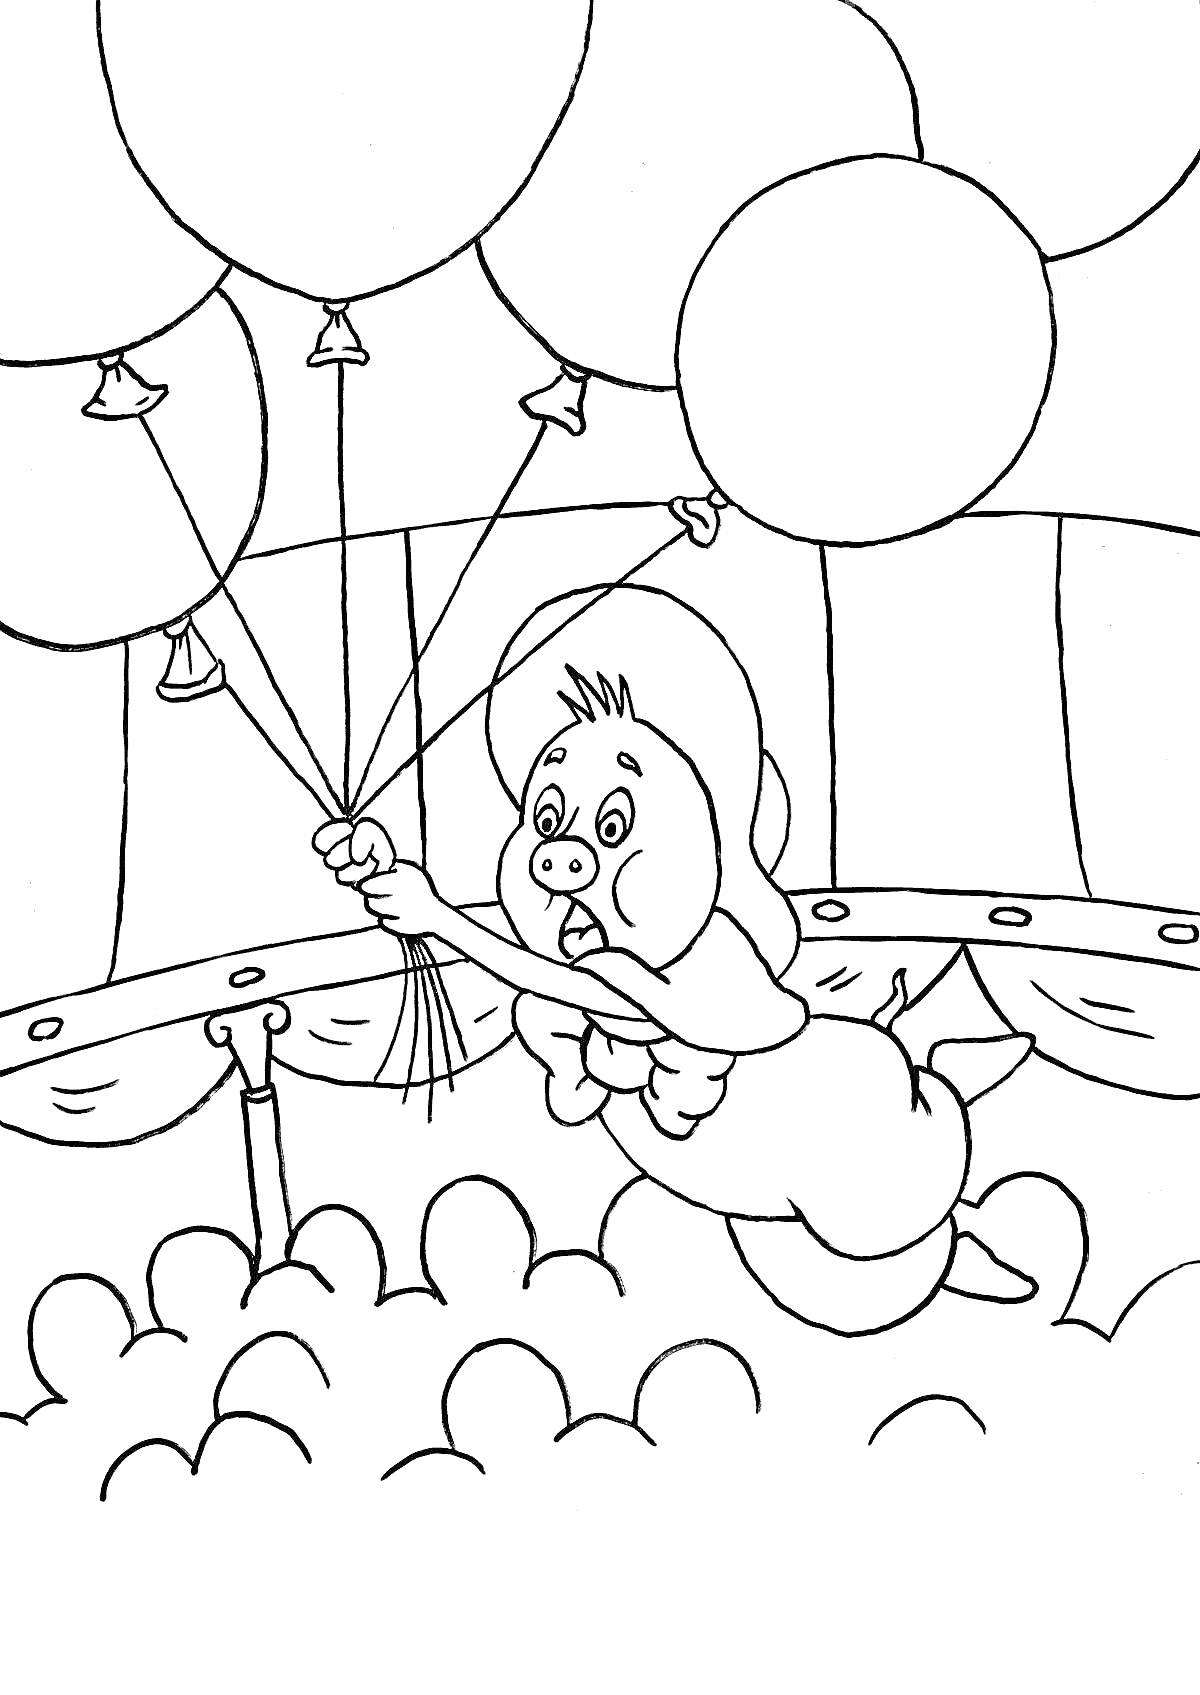 Раскраска Поросёнок Фунтик, летающий на воздушных шарах на арене цирка